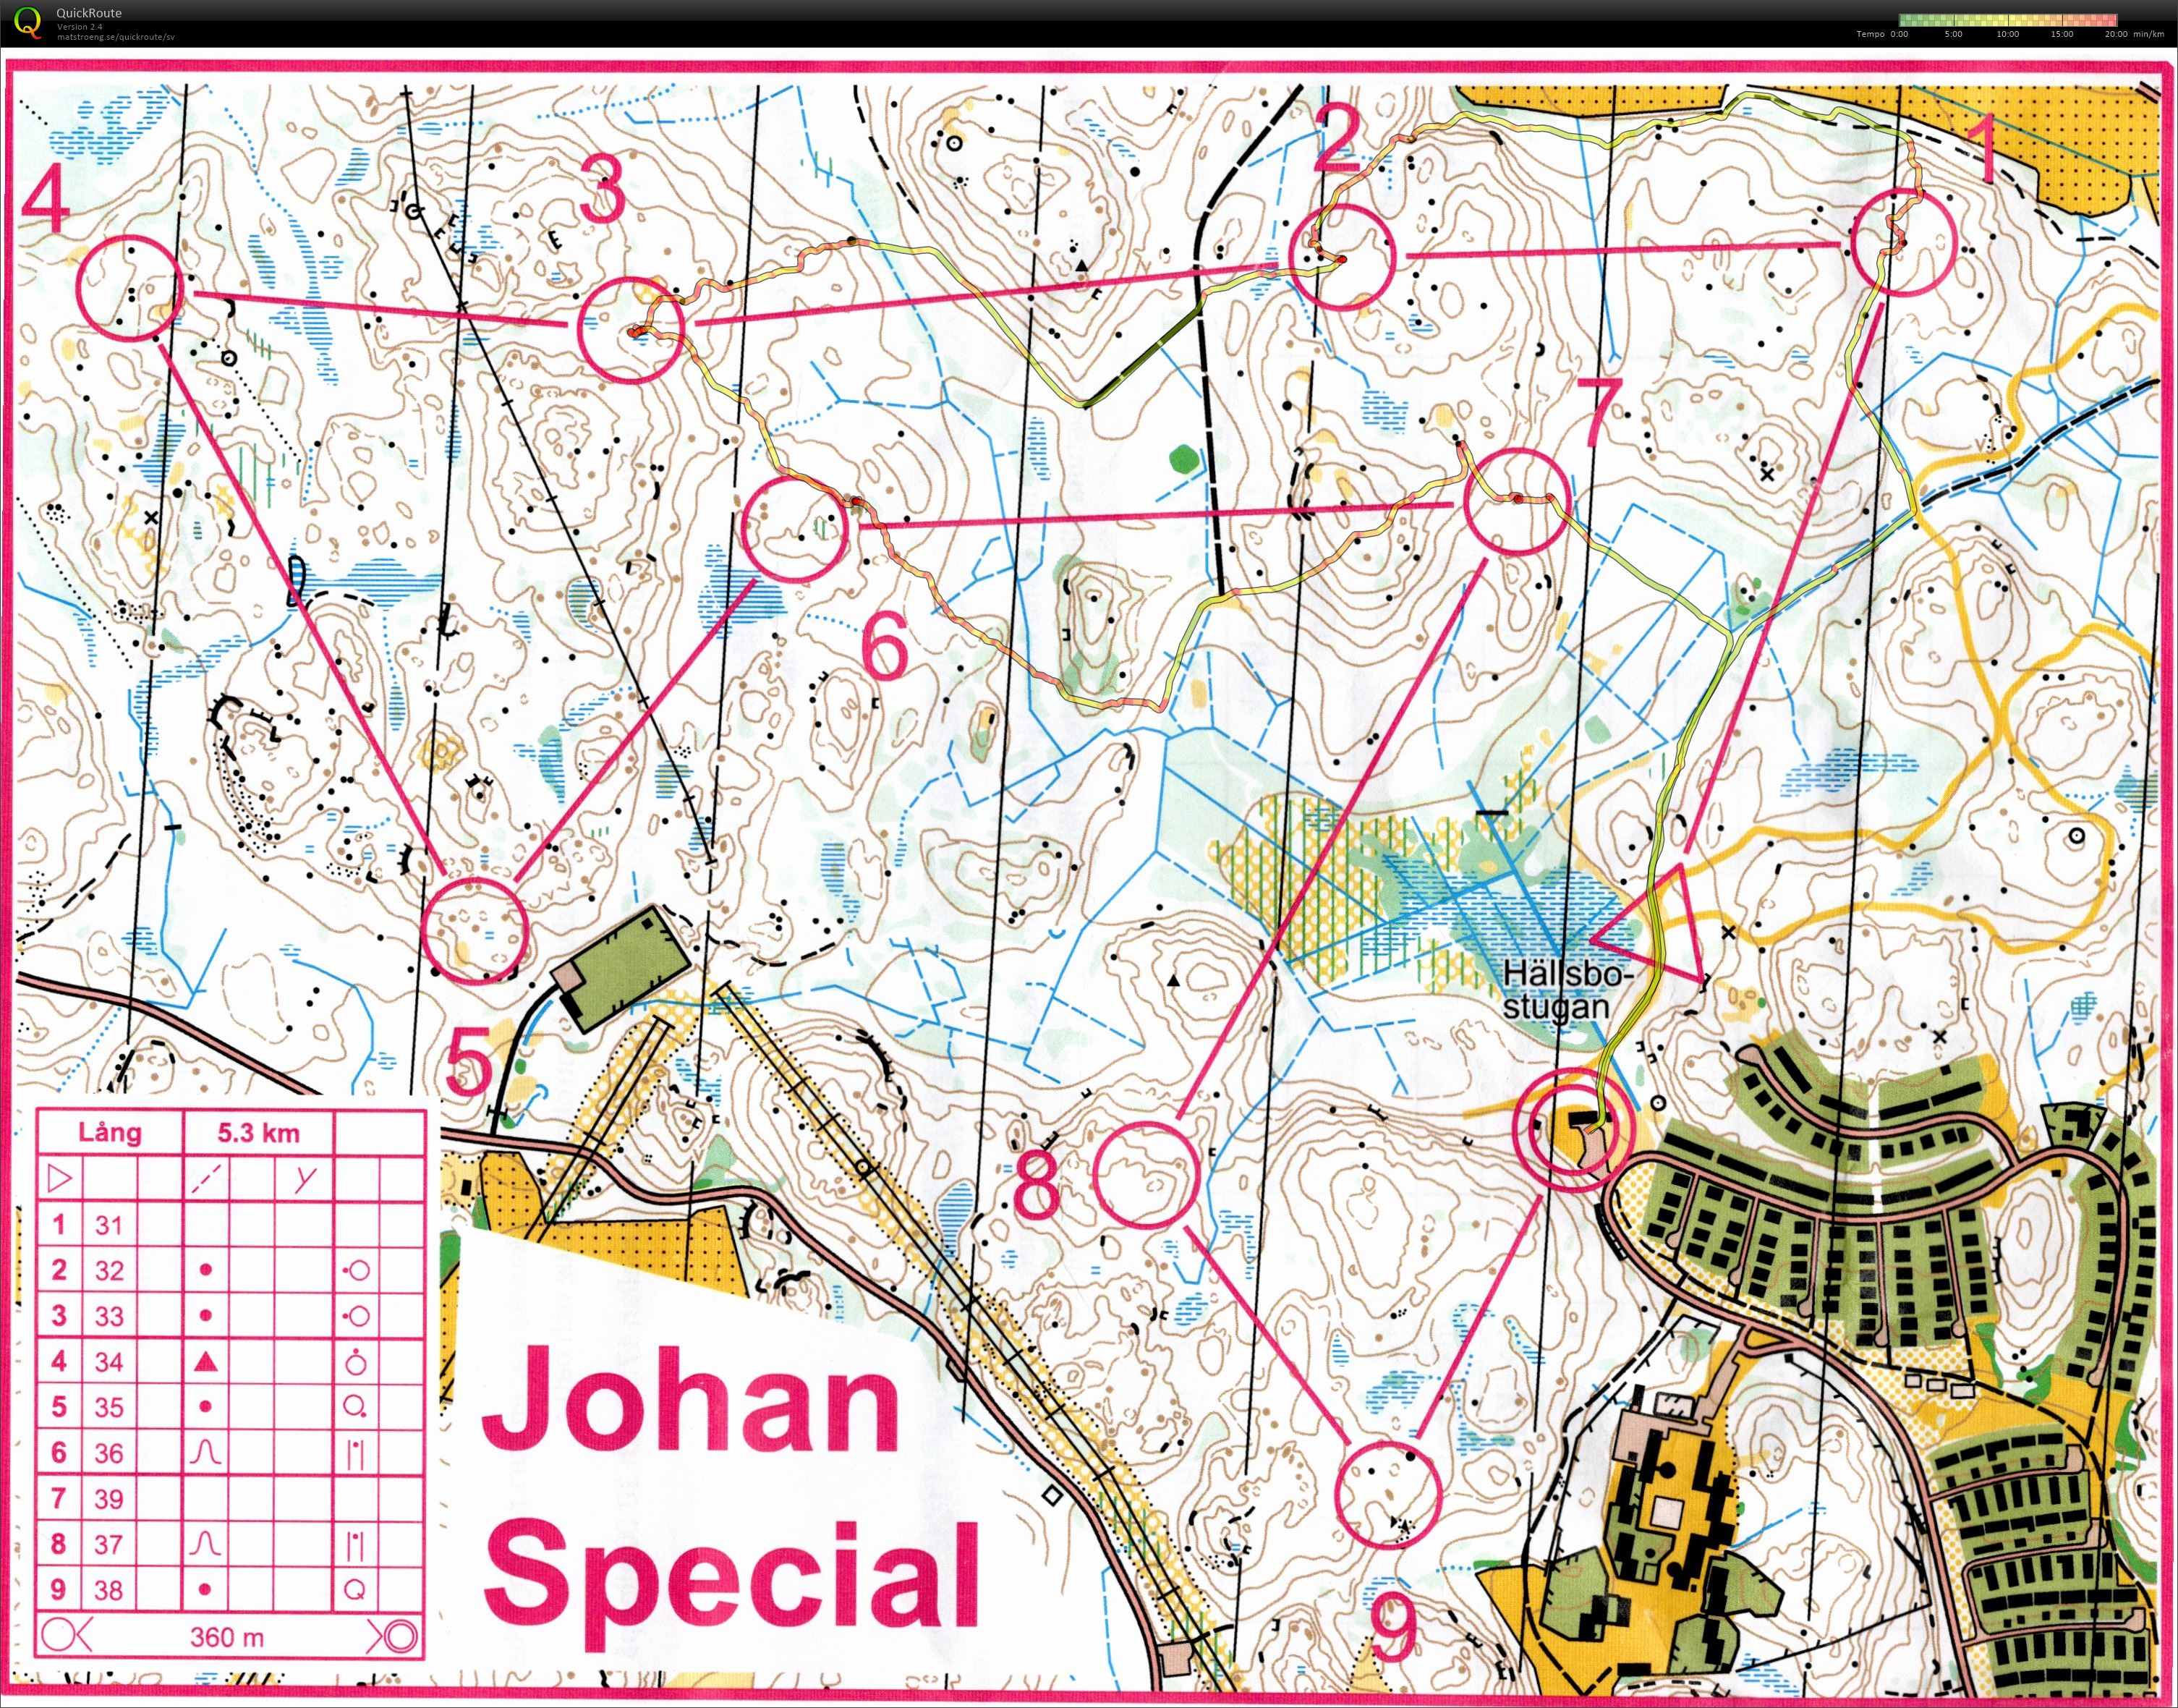 Johan Special (2019-03-03)